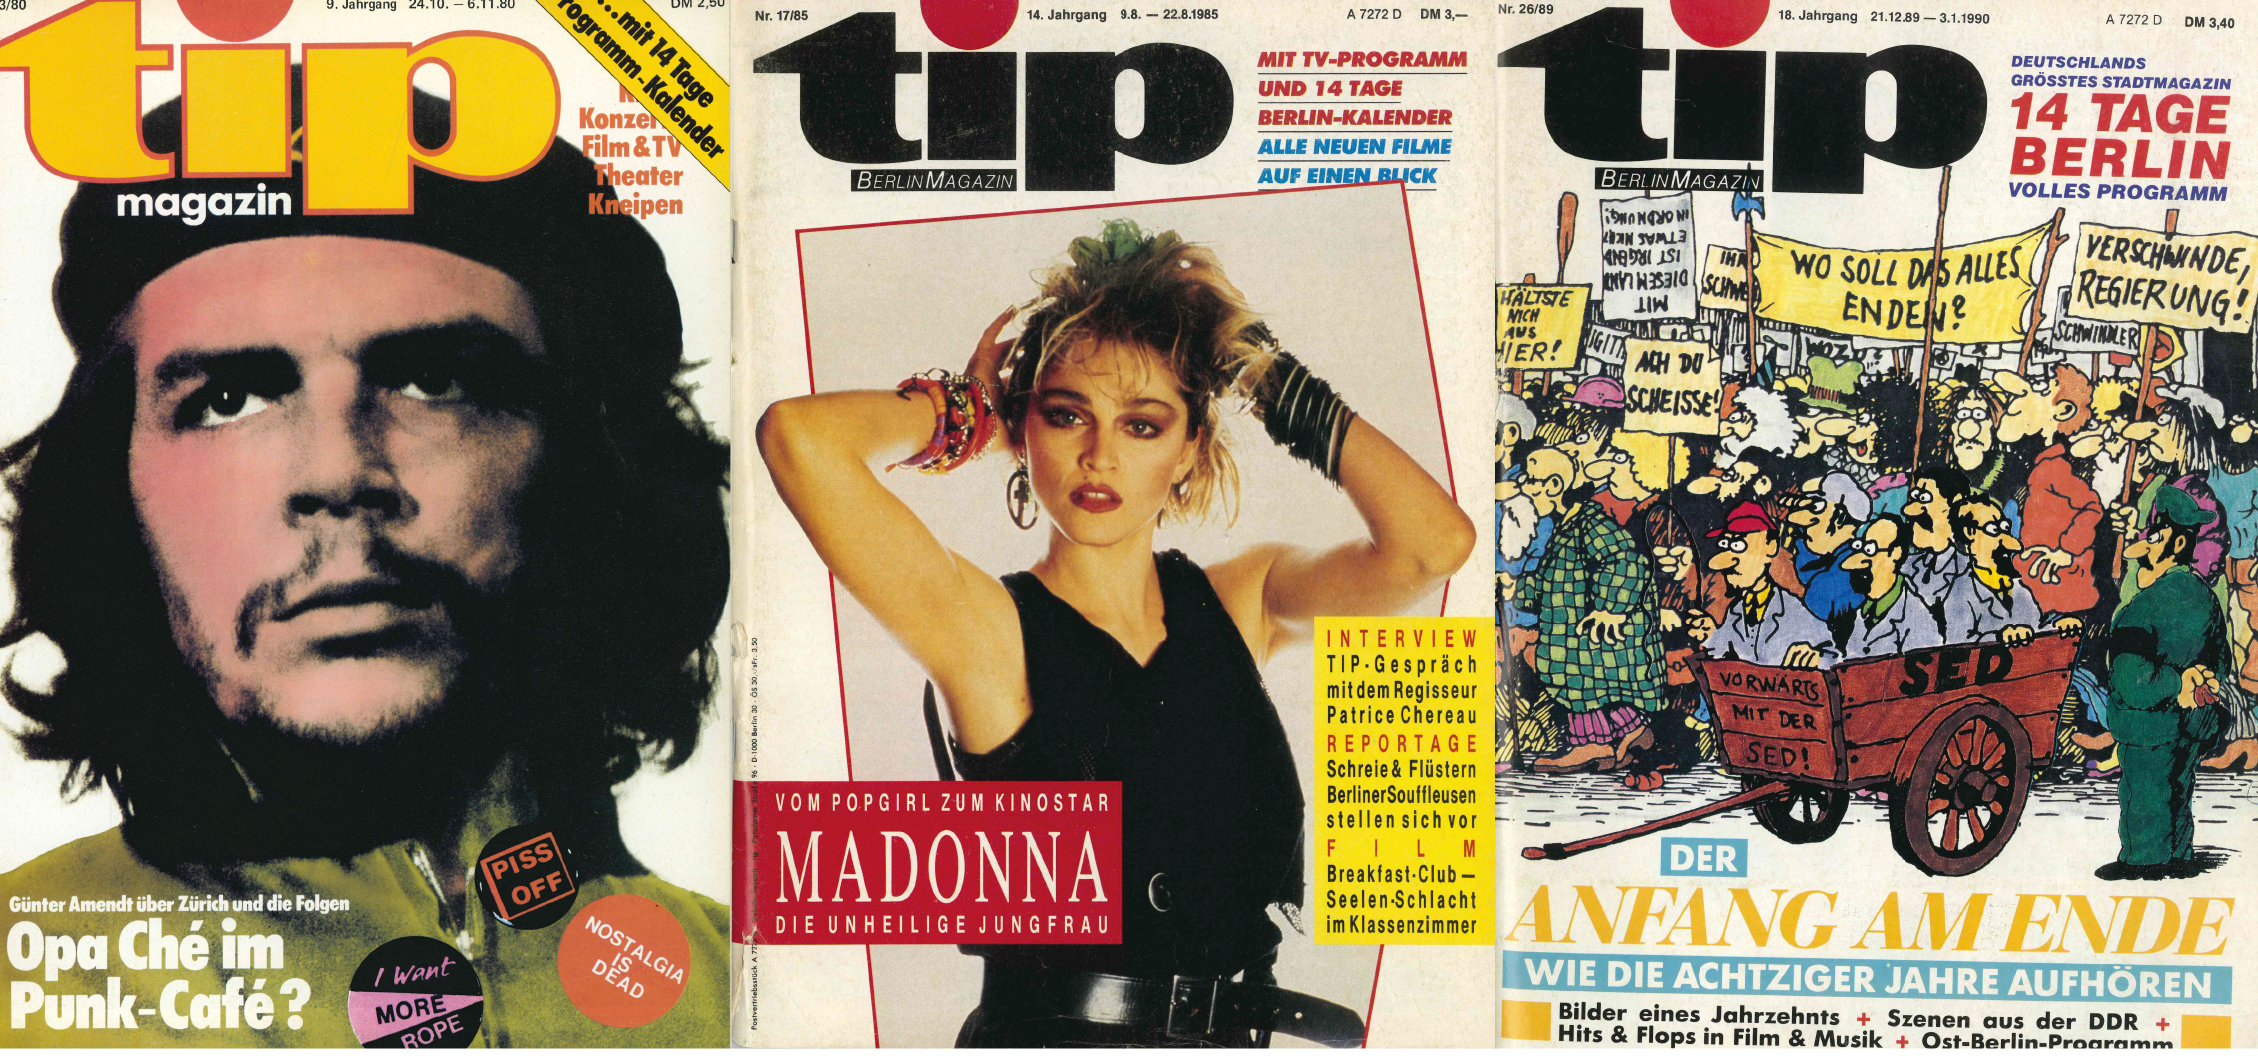 50 Jahre tipBerlin: Die 80er. Mit revolutionärem Ethos im Jahr 1980, einer Verbeugung vor Madonna 1985 und dem Blick zurüclk aufs Jahrzehnt im Dezember 1989. Collage: tipBerlin